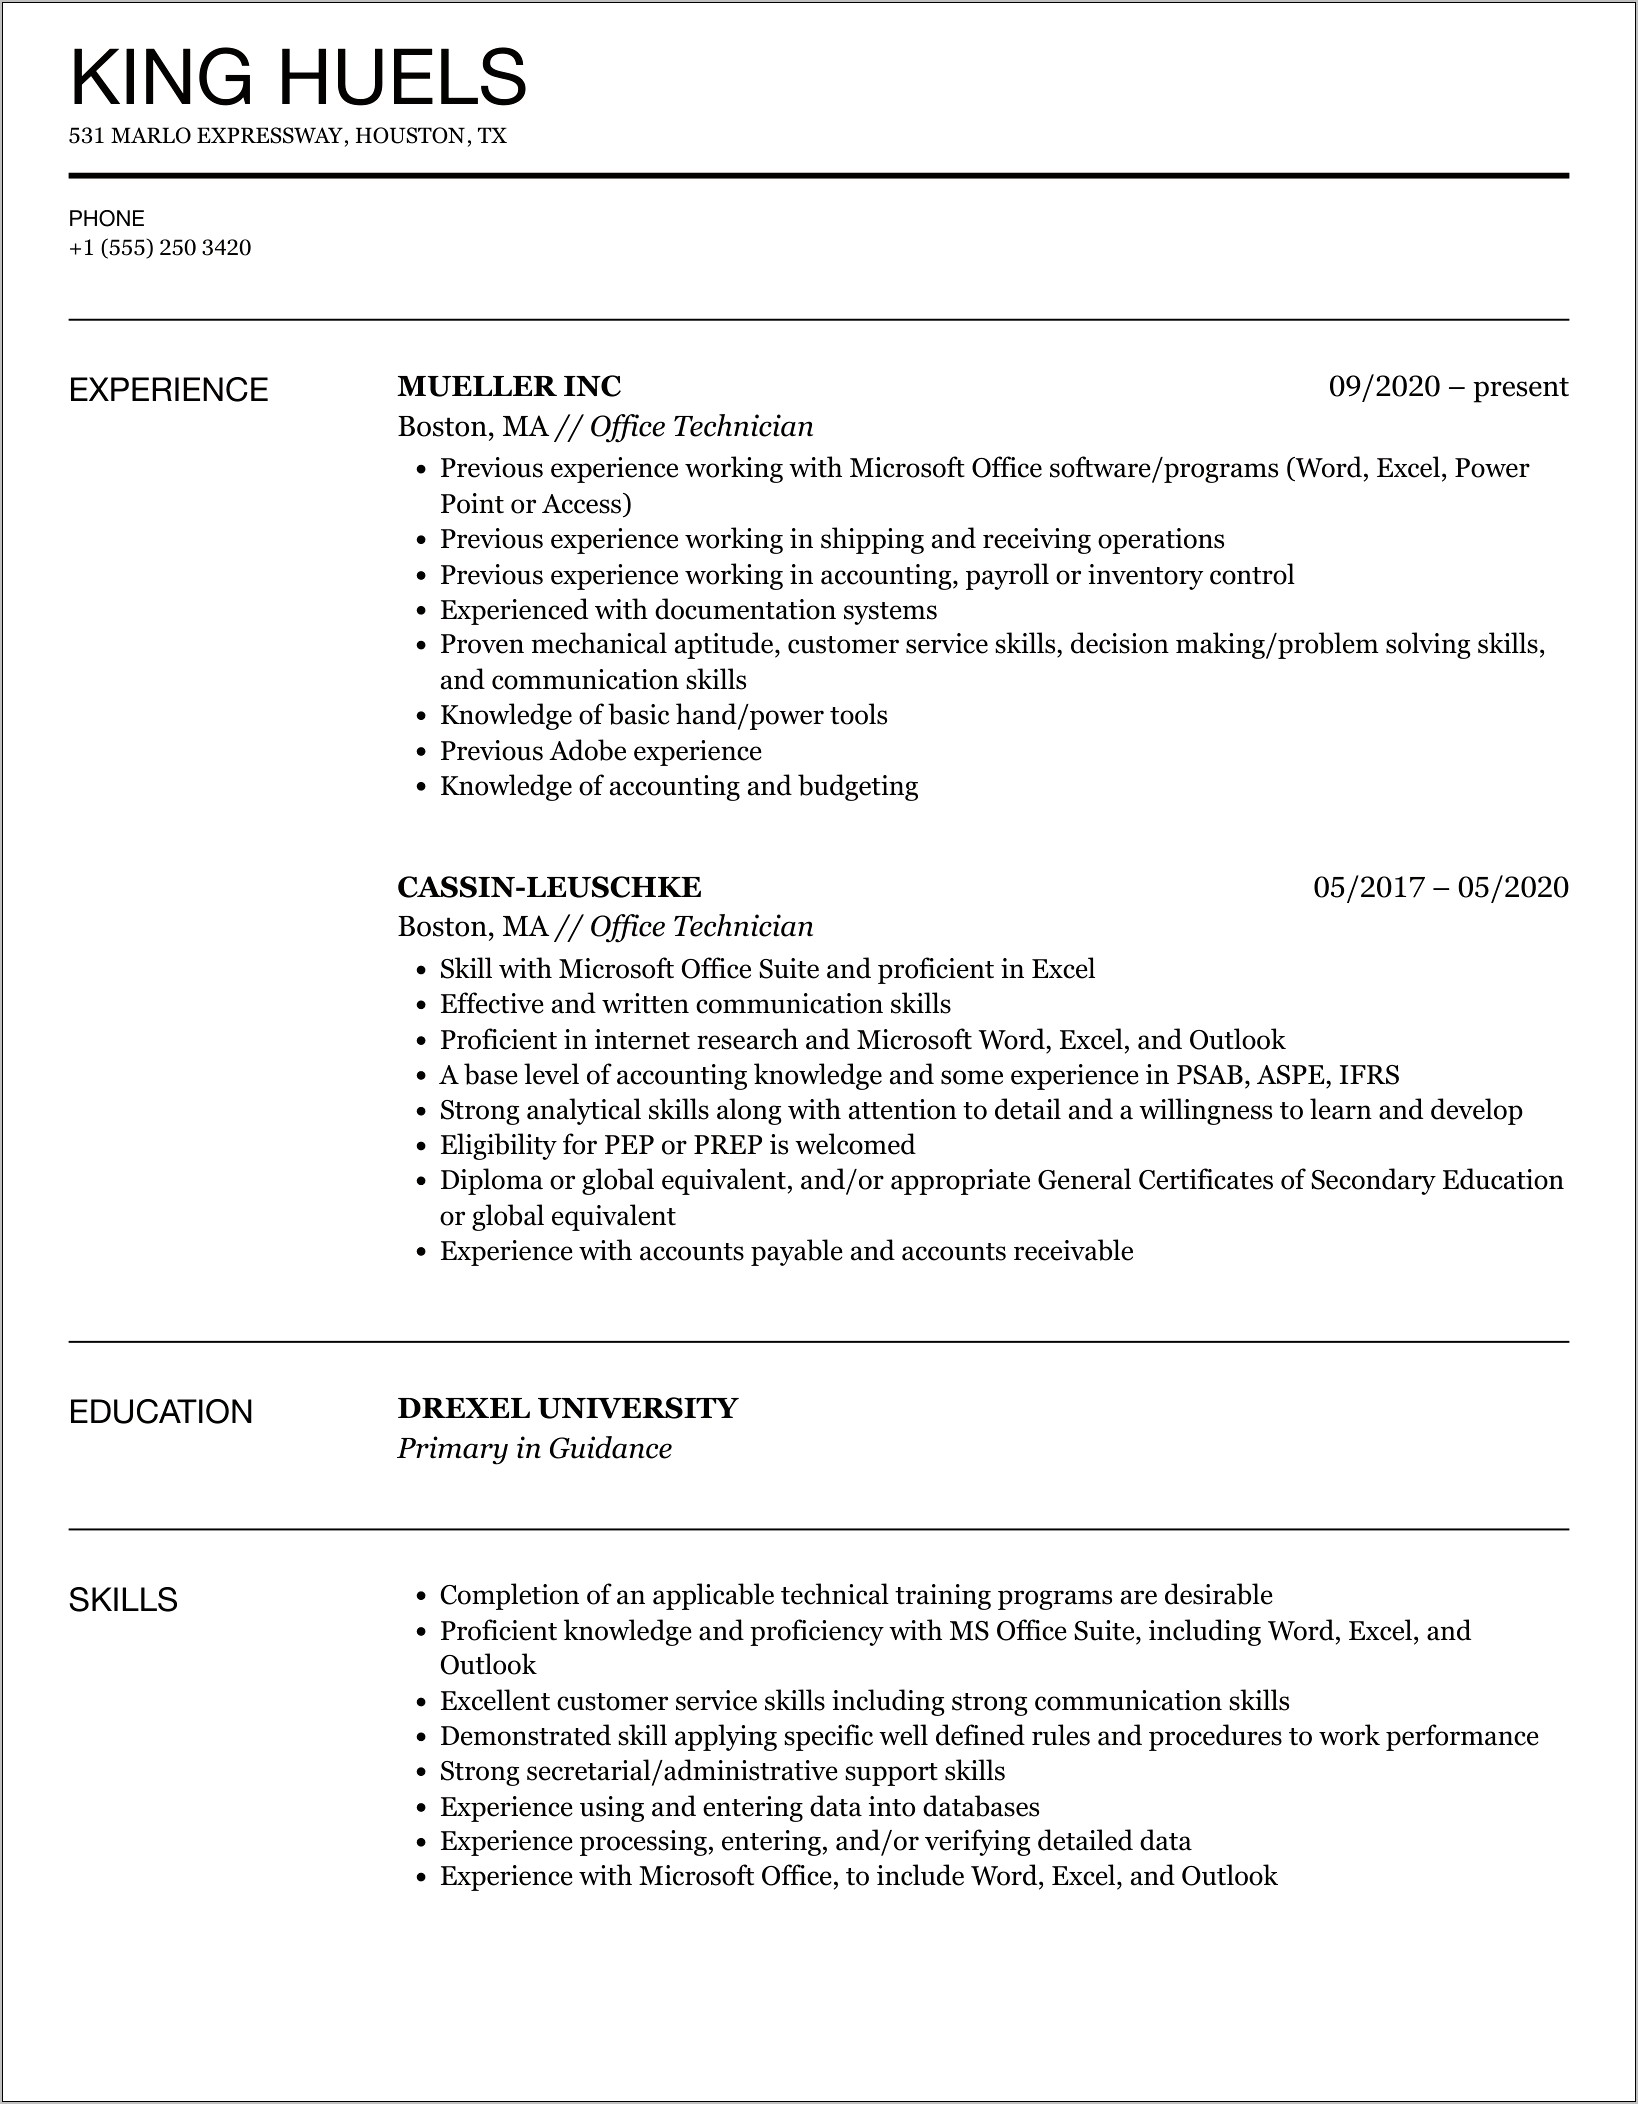 Sample Resume For Office Technician